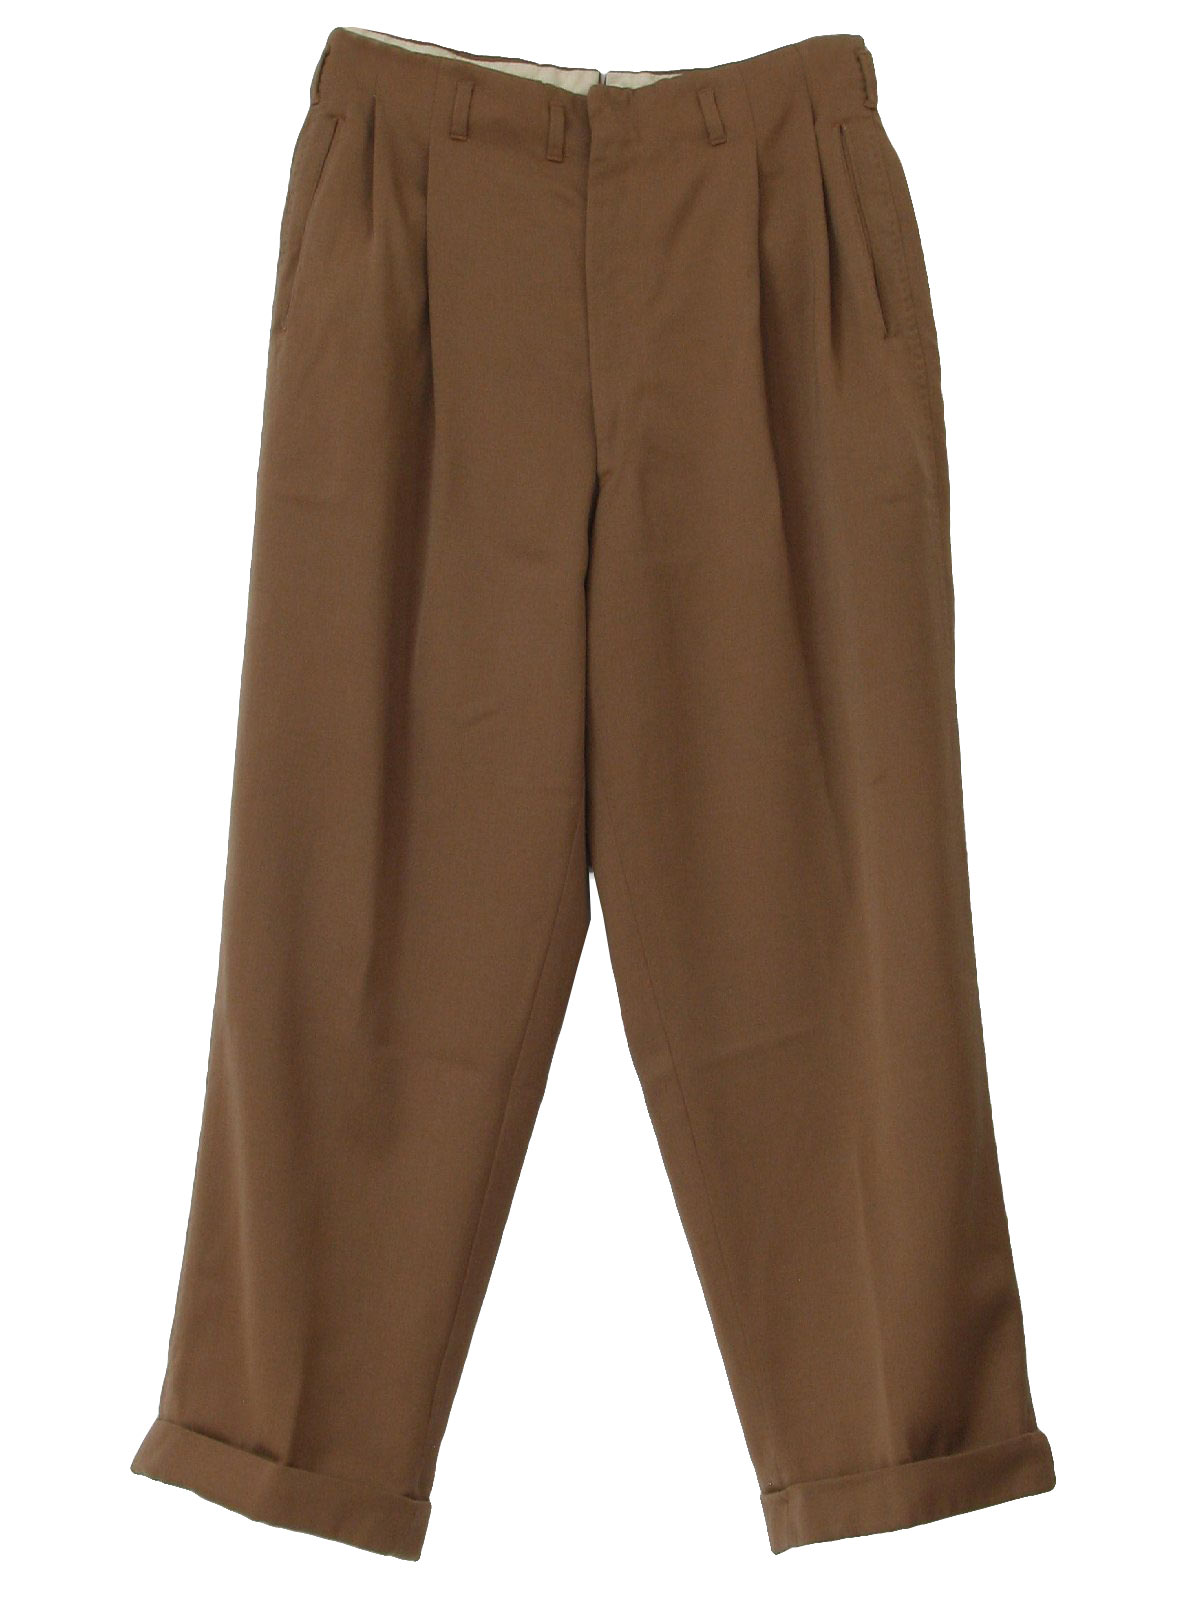 Vintage 1950's Pants: 50s -Plateau Slacks- Mens tan solid colored ...